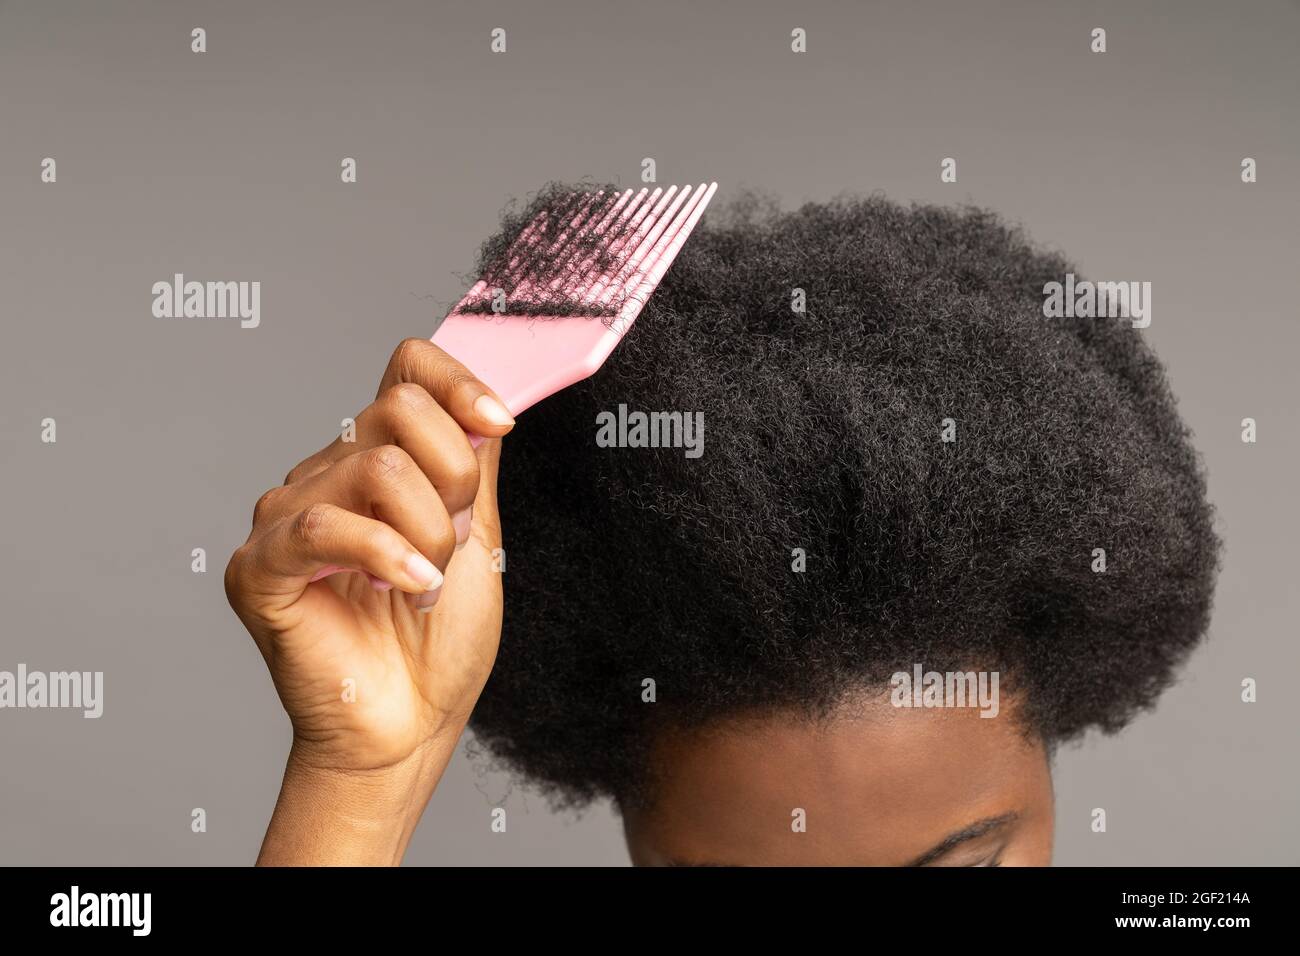 afroamerikanische Frau kämmt lockiges Haar. Ethnische weibliche Hand halten  Haarbürste an welligen Afro-Frisur Stockfotografie - Alamy